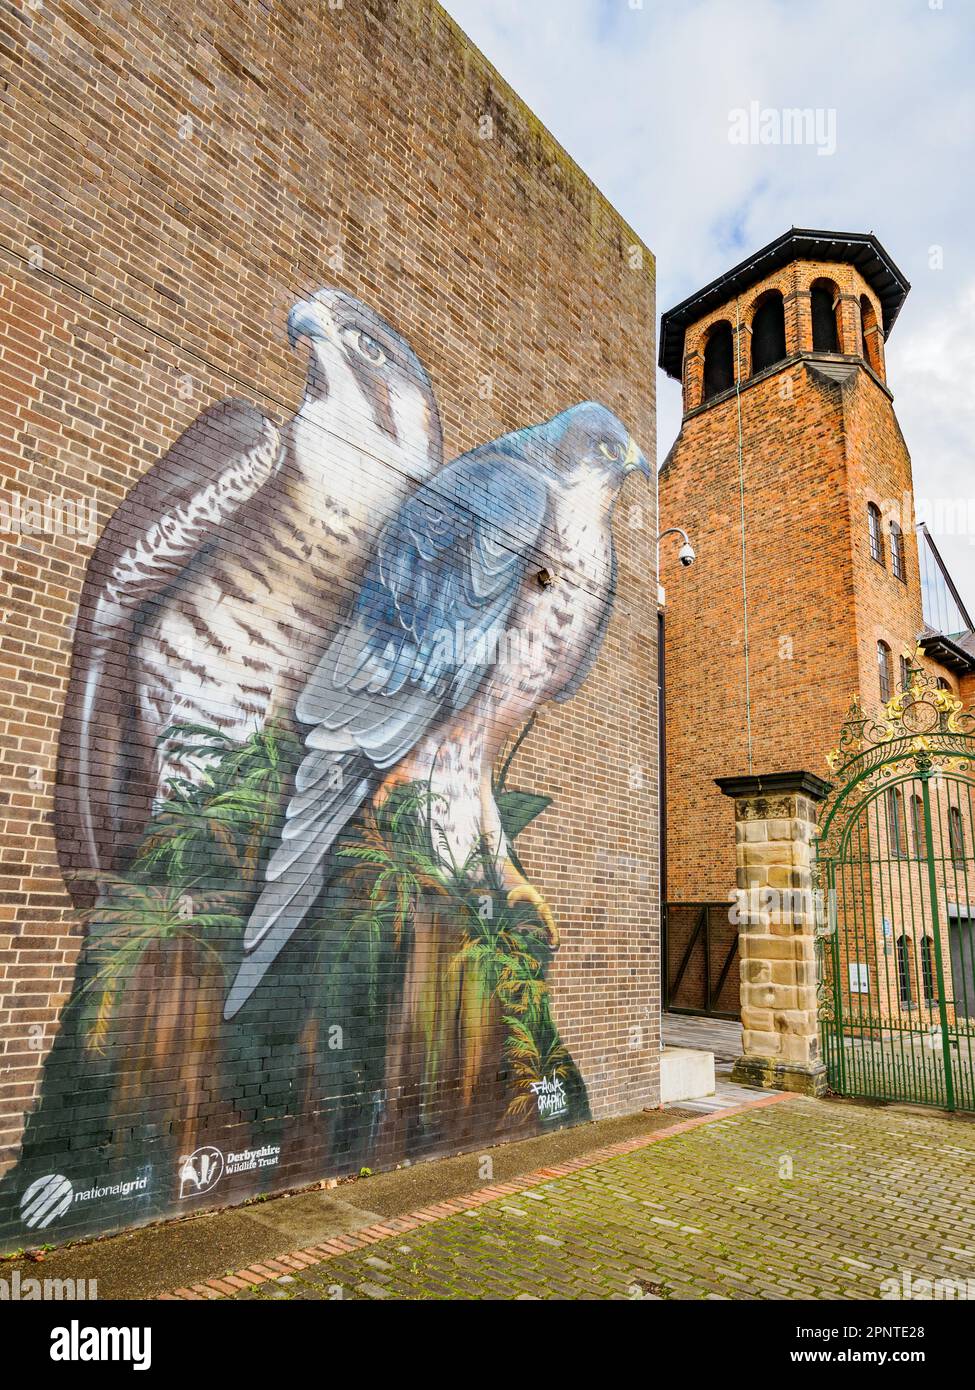 Das Museum of Making in Derby UK mit Wandgemälde von Peregrine Falcon Pair, um die Aufmerksamkeit auf die Vögel zu lenken, die auf dem nahe gelegenen Dom-Dach nisten Stockfoto